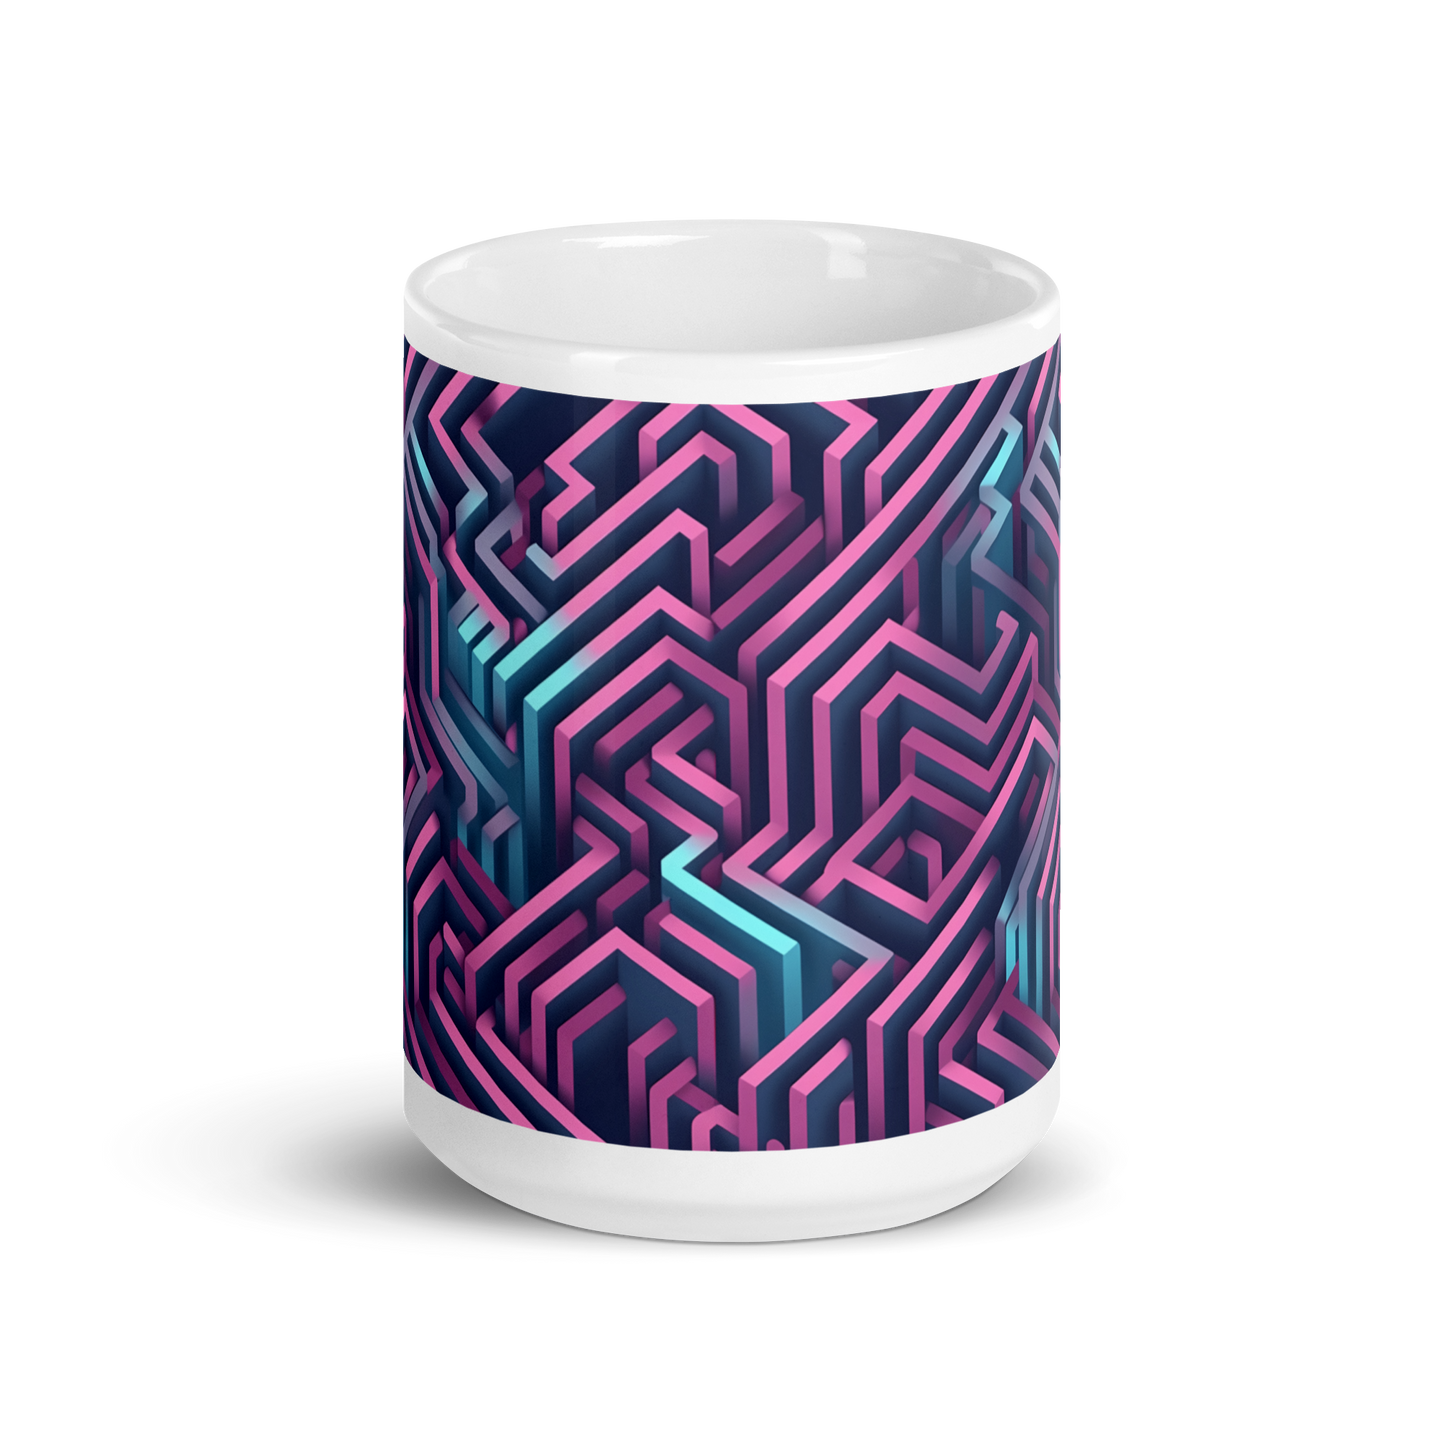 3D Maze Illusion | 3D Patterns | White Glossy Mug - #4